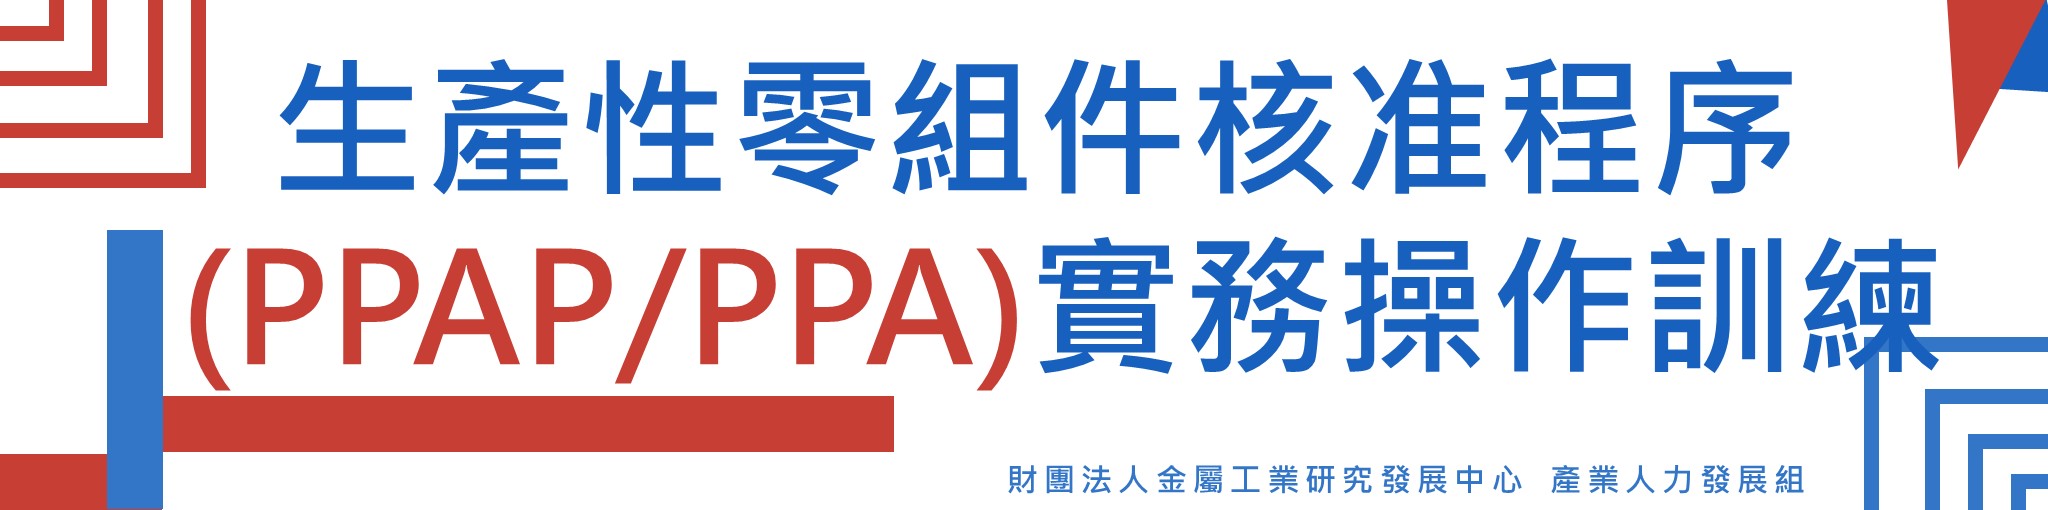 生產性零組件核准程序(PPAP/PPA)實務操作訓練